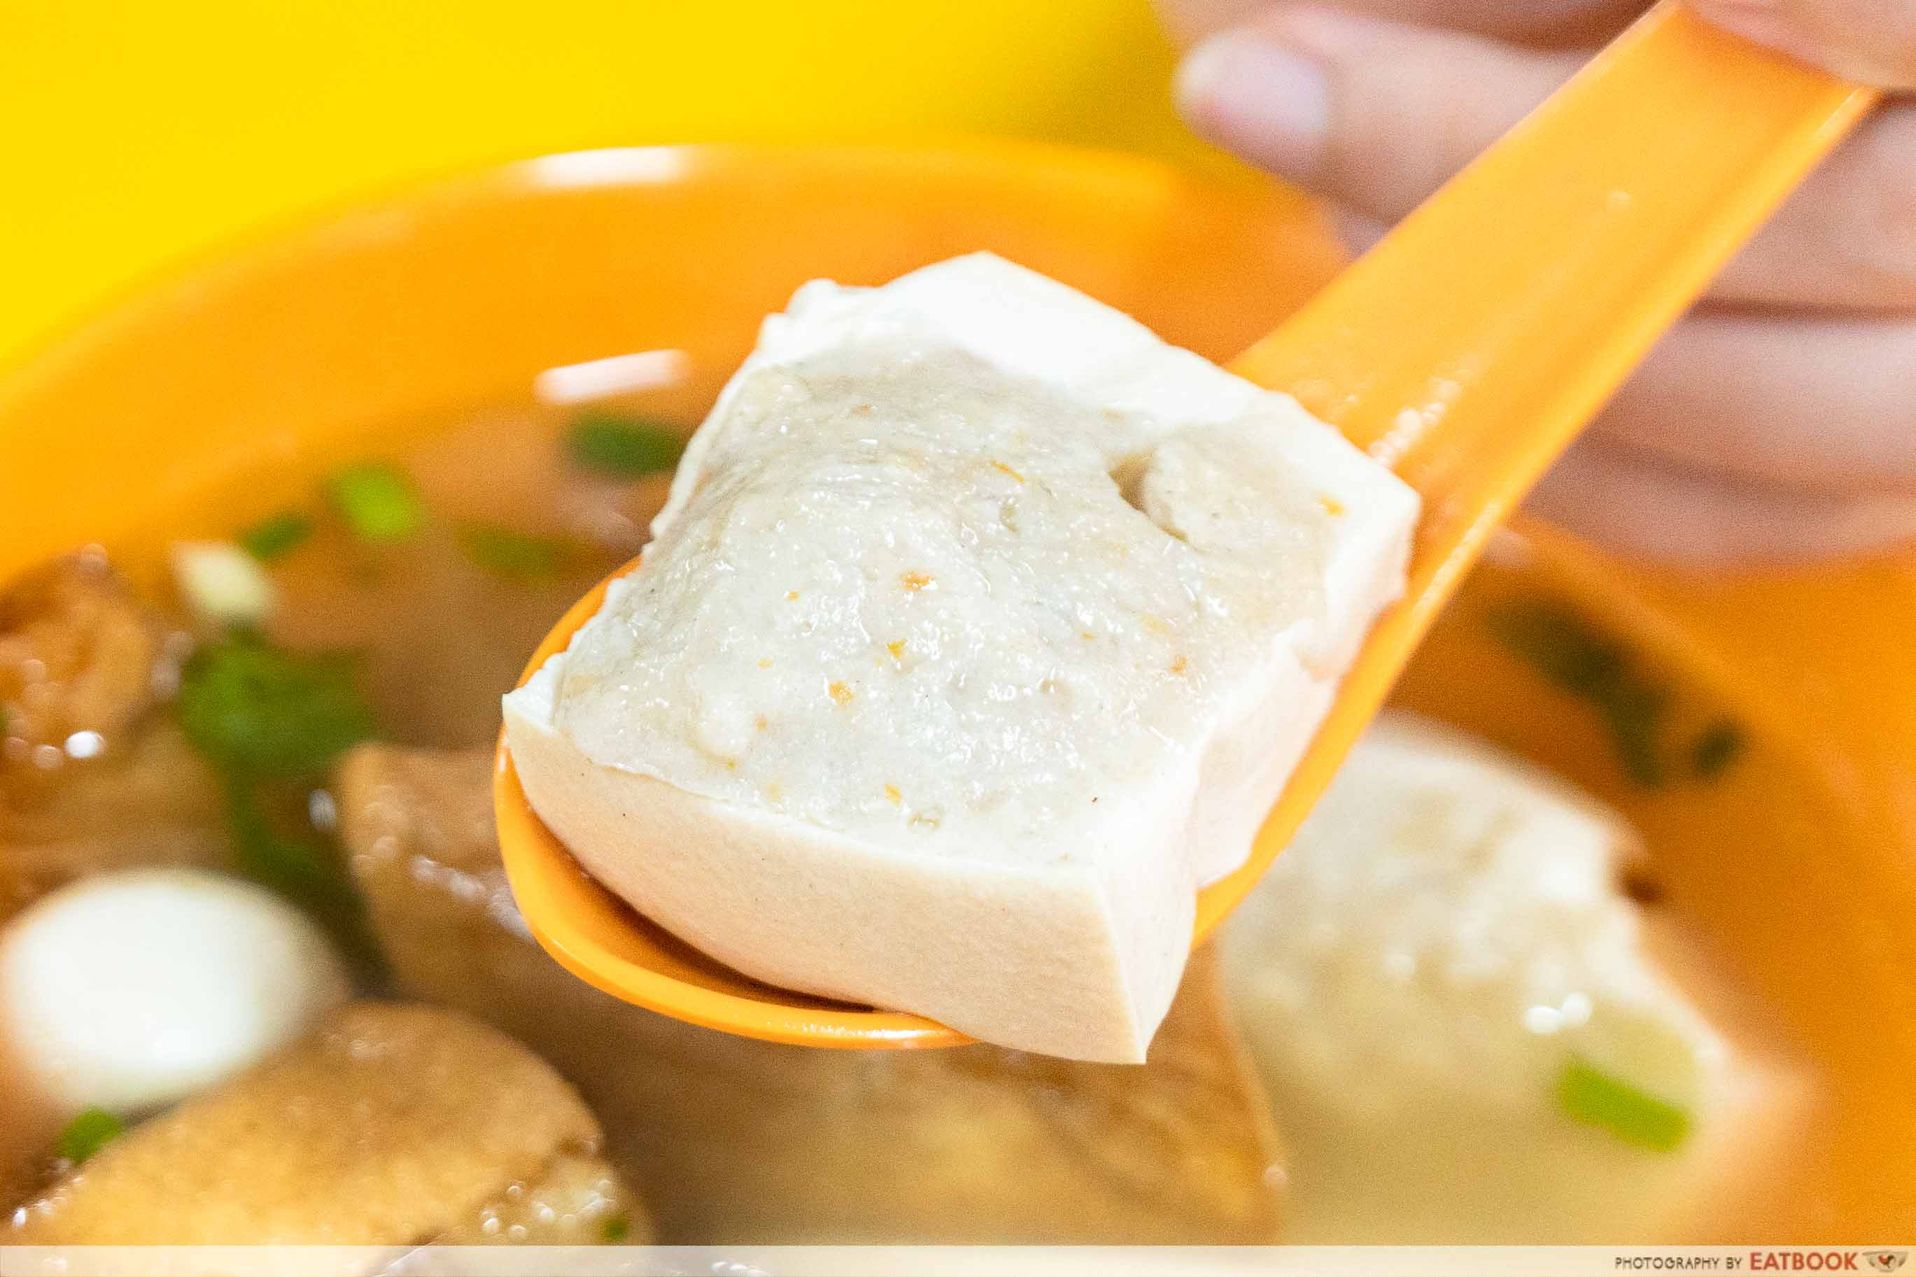 yong xiang xing dou fu tofu and fish paste intro shot